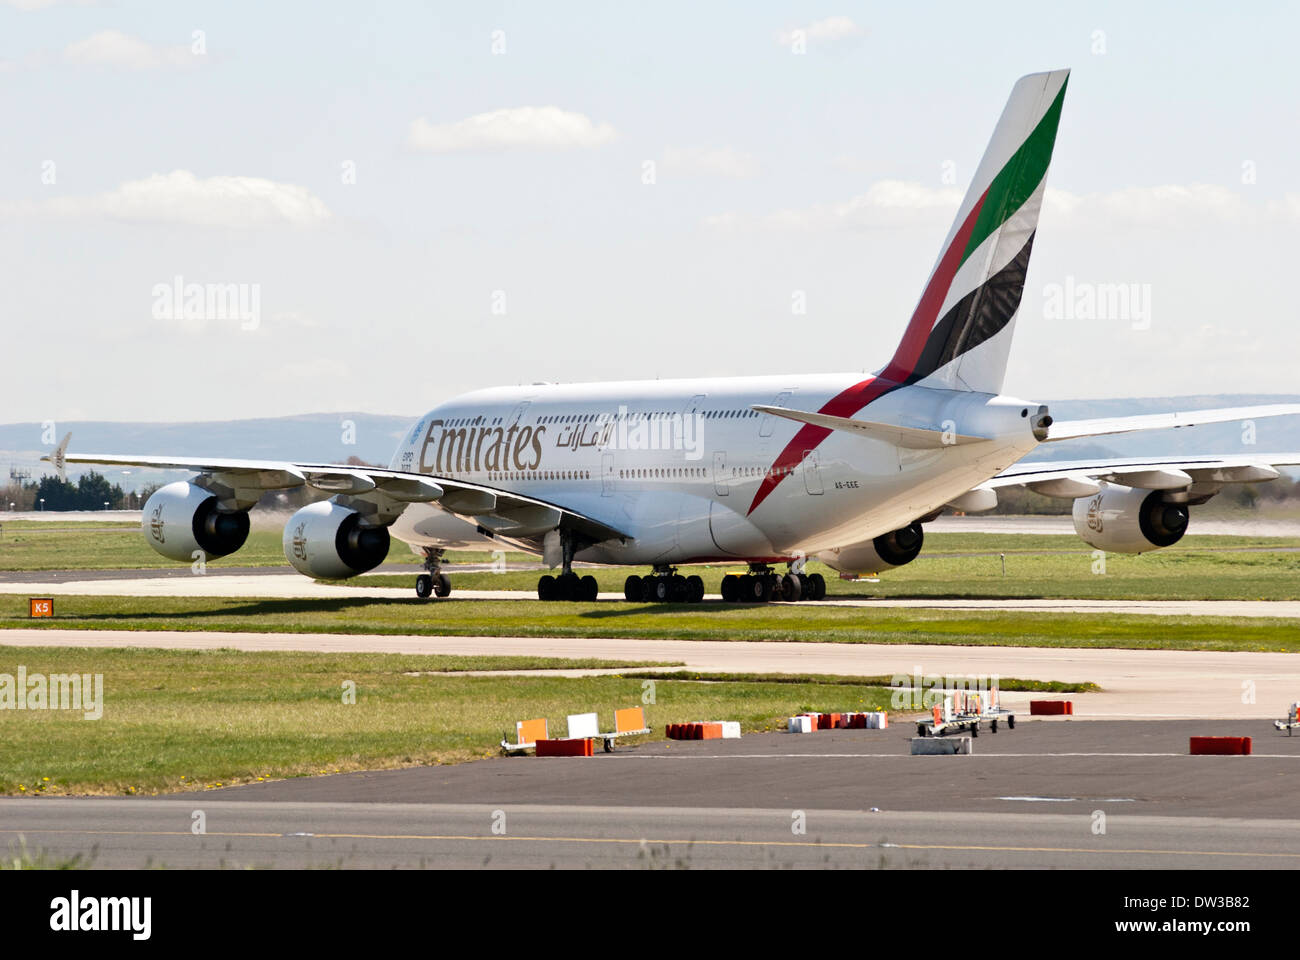 Unis Airbus A380 le roulage sur la piste après l'atterrissage de l'aéroport de Manchester, Angleterre, RU Banque D'Images